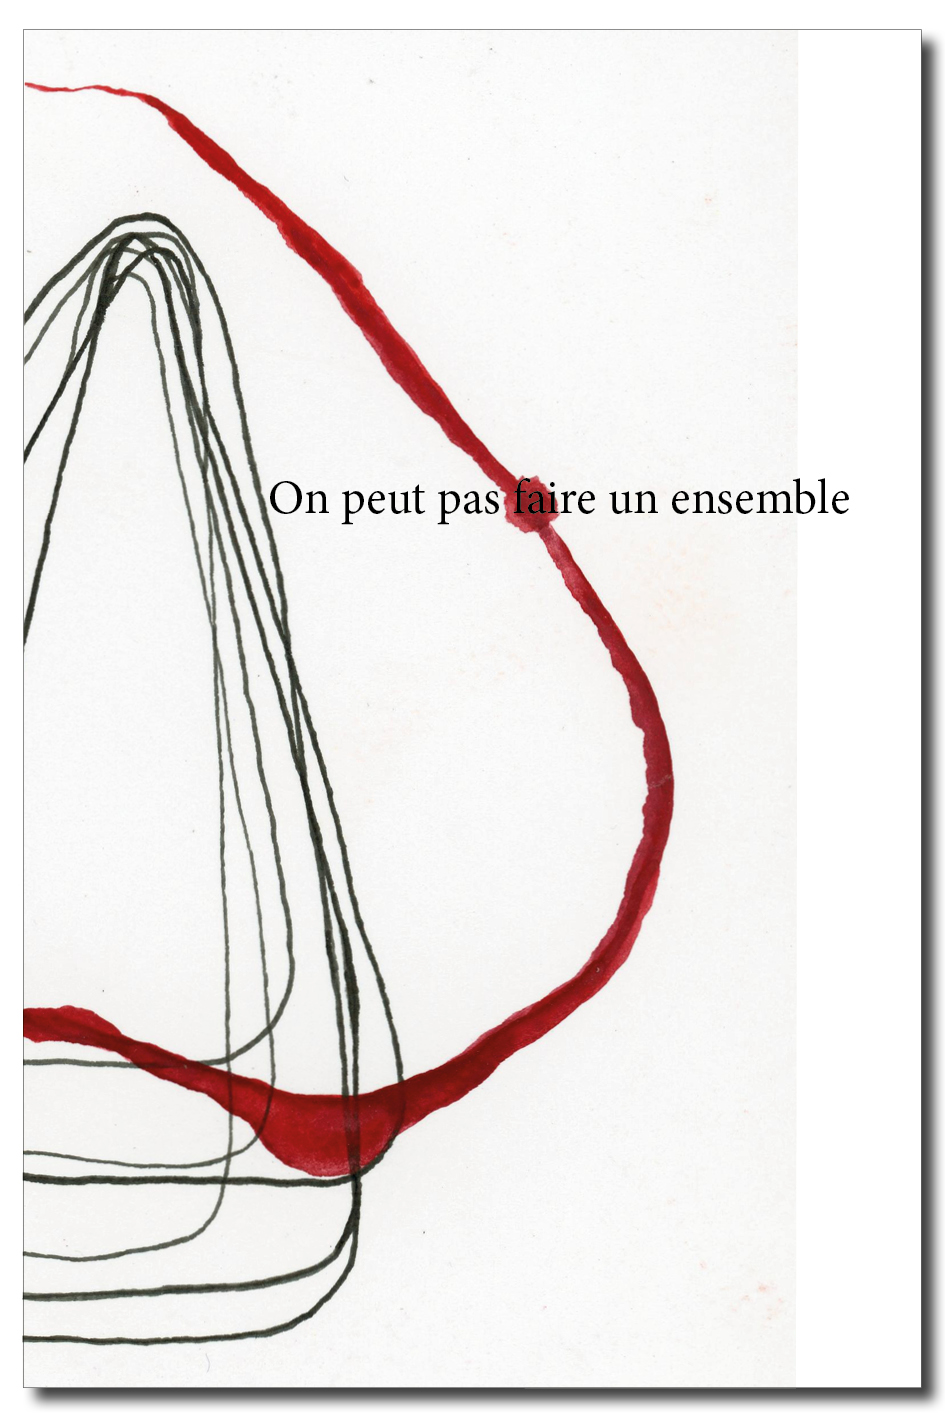 Mémoire Master Art - Océane Perrin 2019